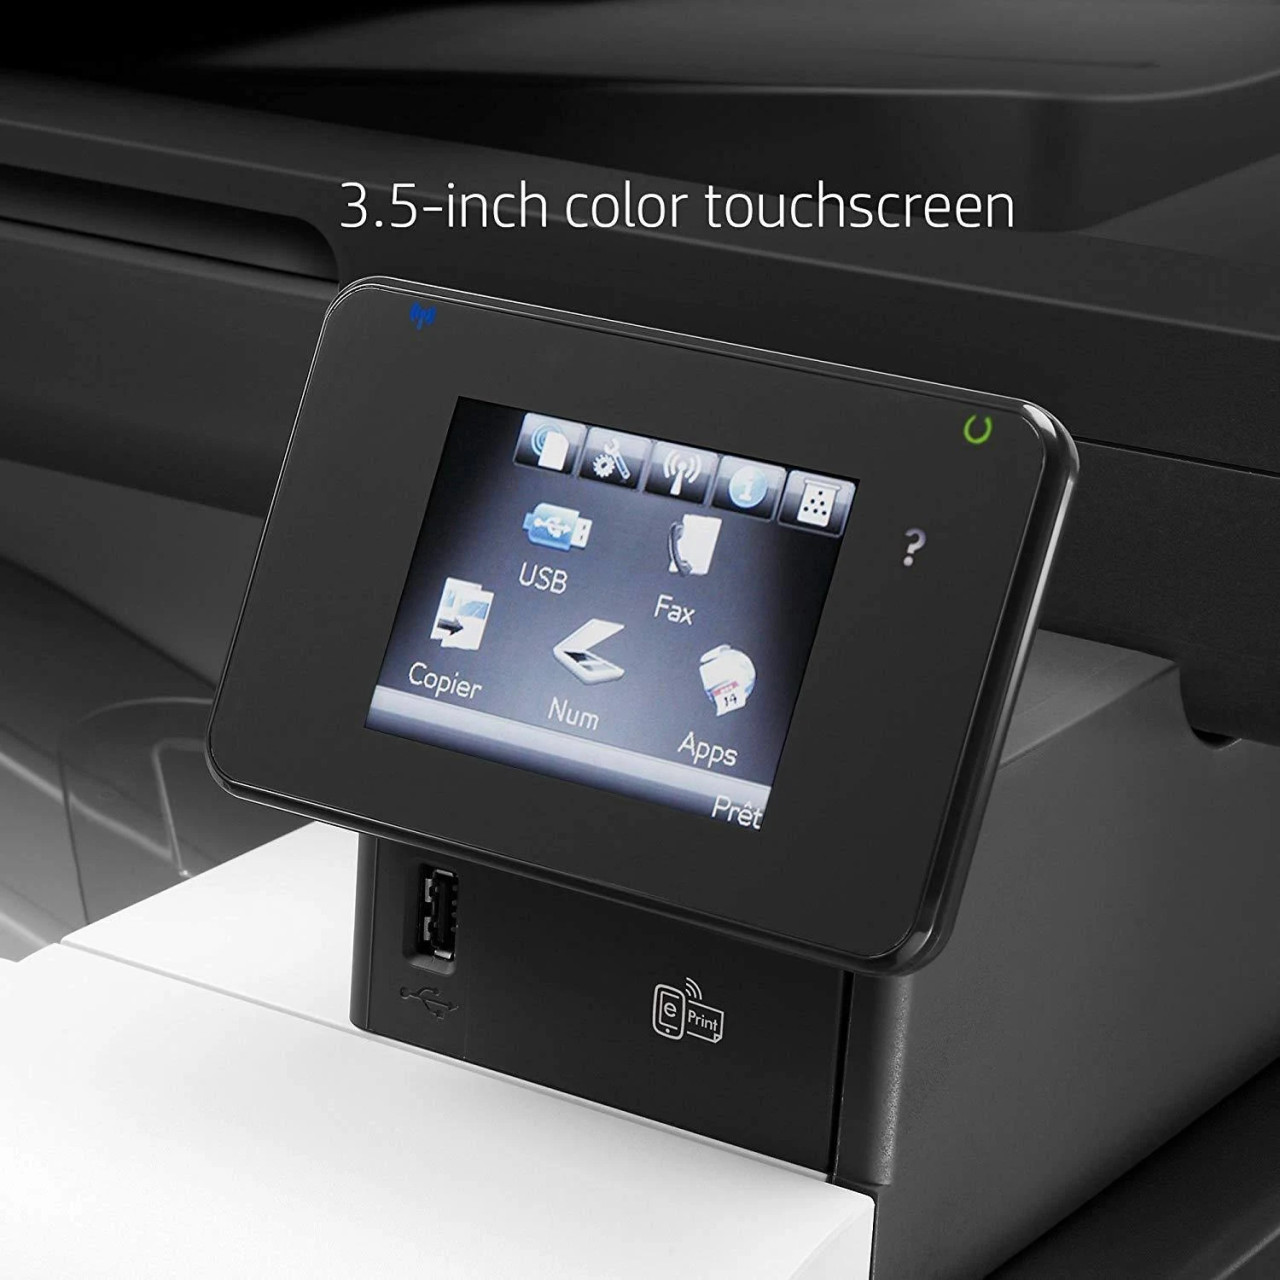 HP LaserJet Pro 500 Color MFP M570dn - CZ271A - Color MFP